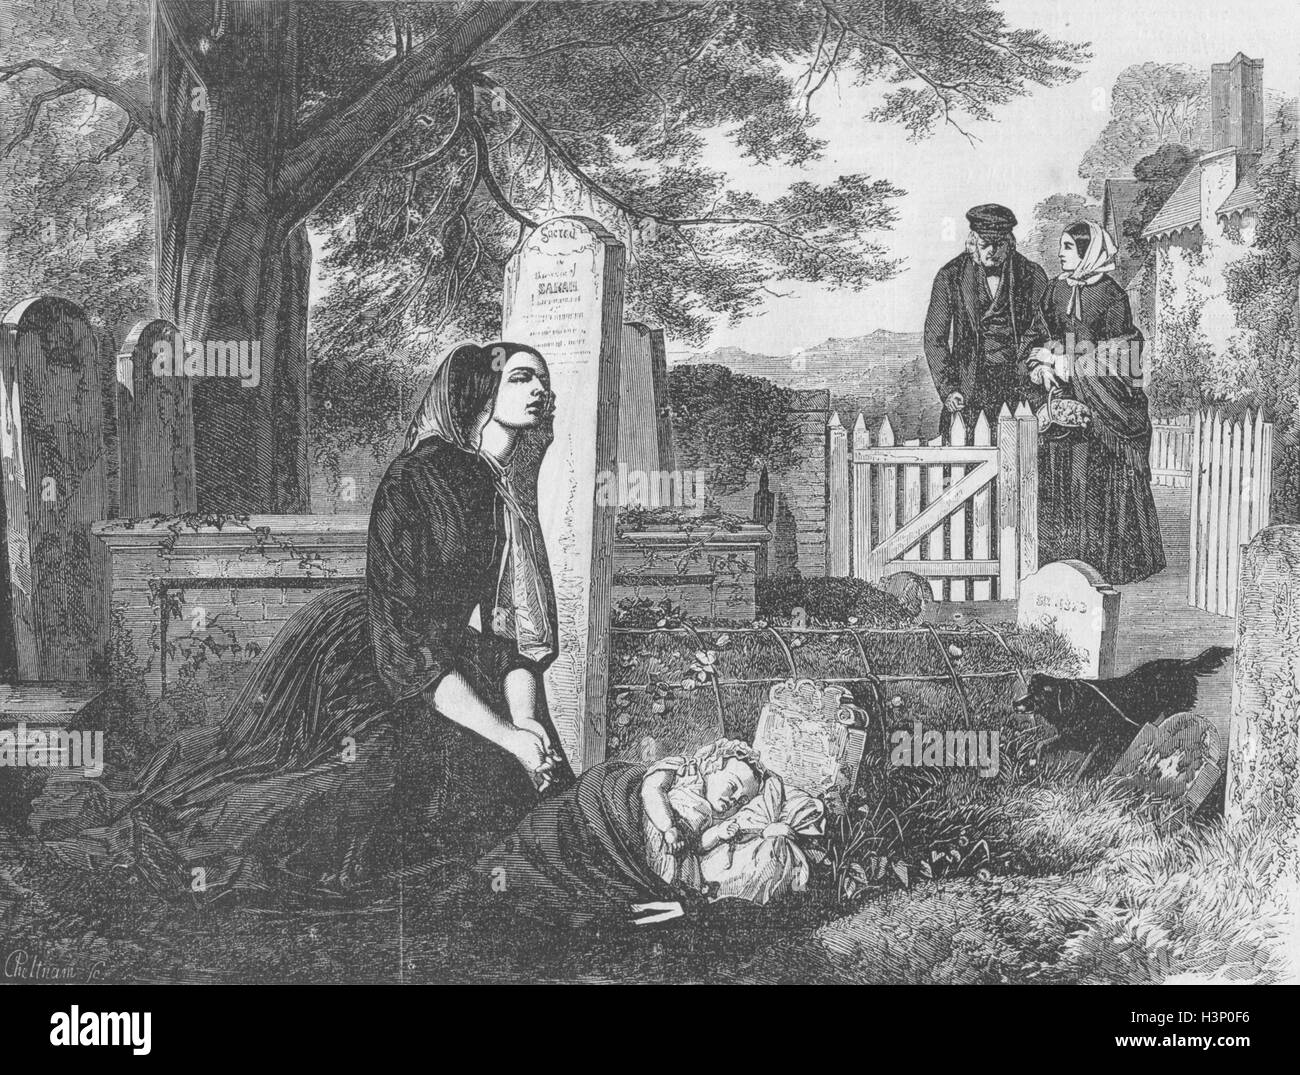 Cimiteri di ritorno Wanderer 1855. Tempi illustrato Foto Stock